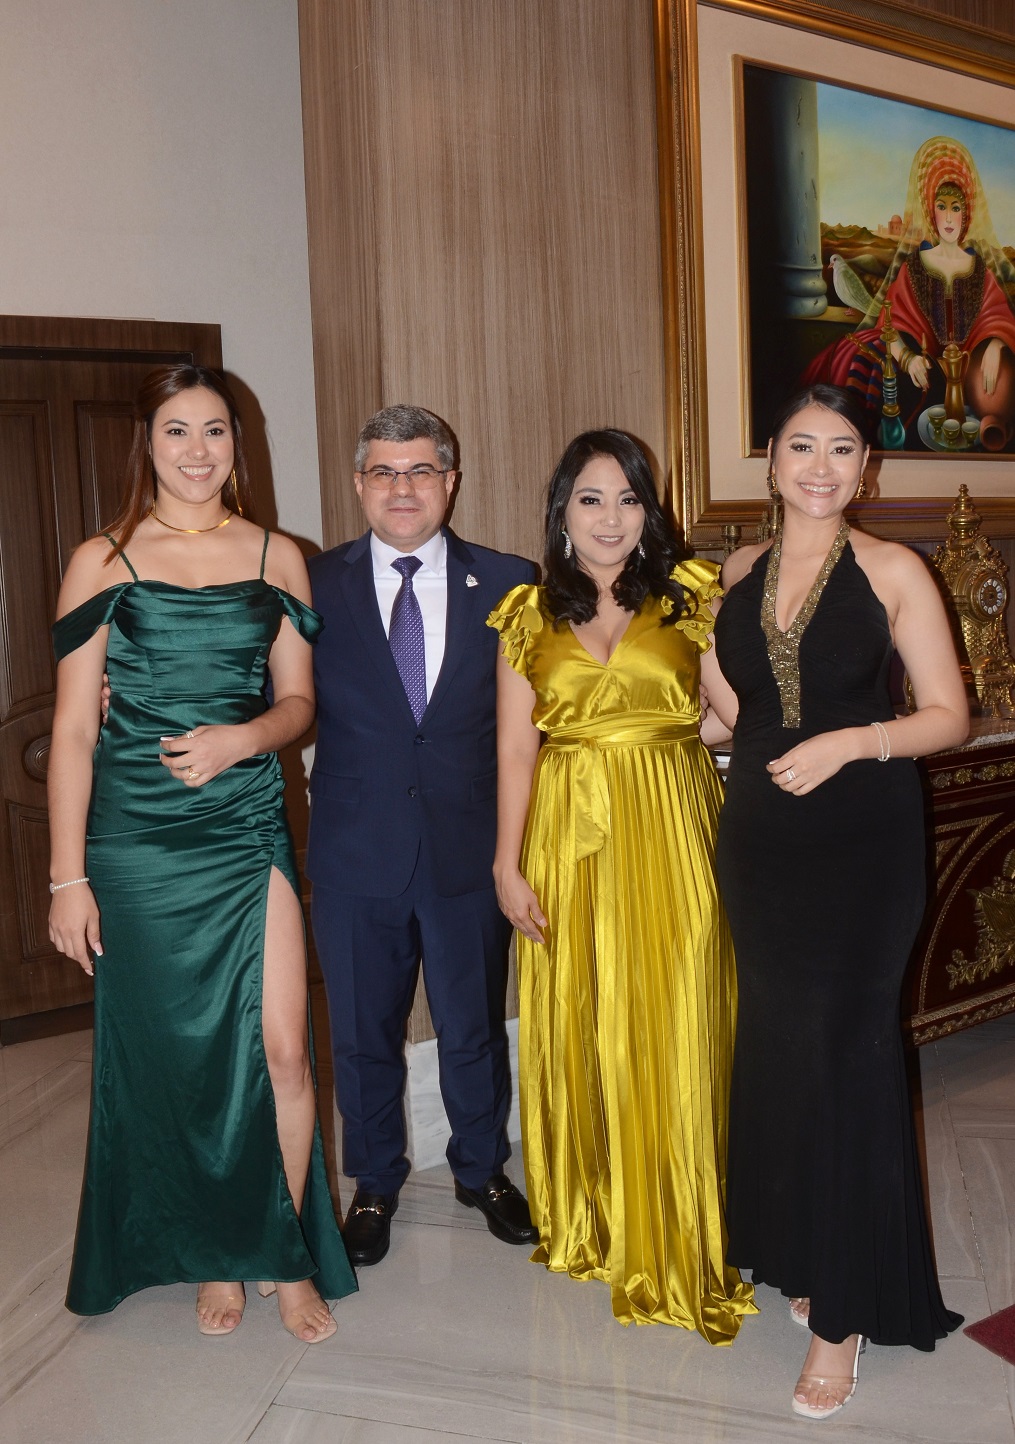 Con elegante gala Cofisa celebra su 40 aniversario en San Pedro Sula